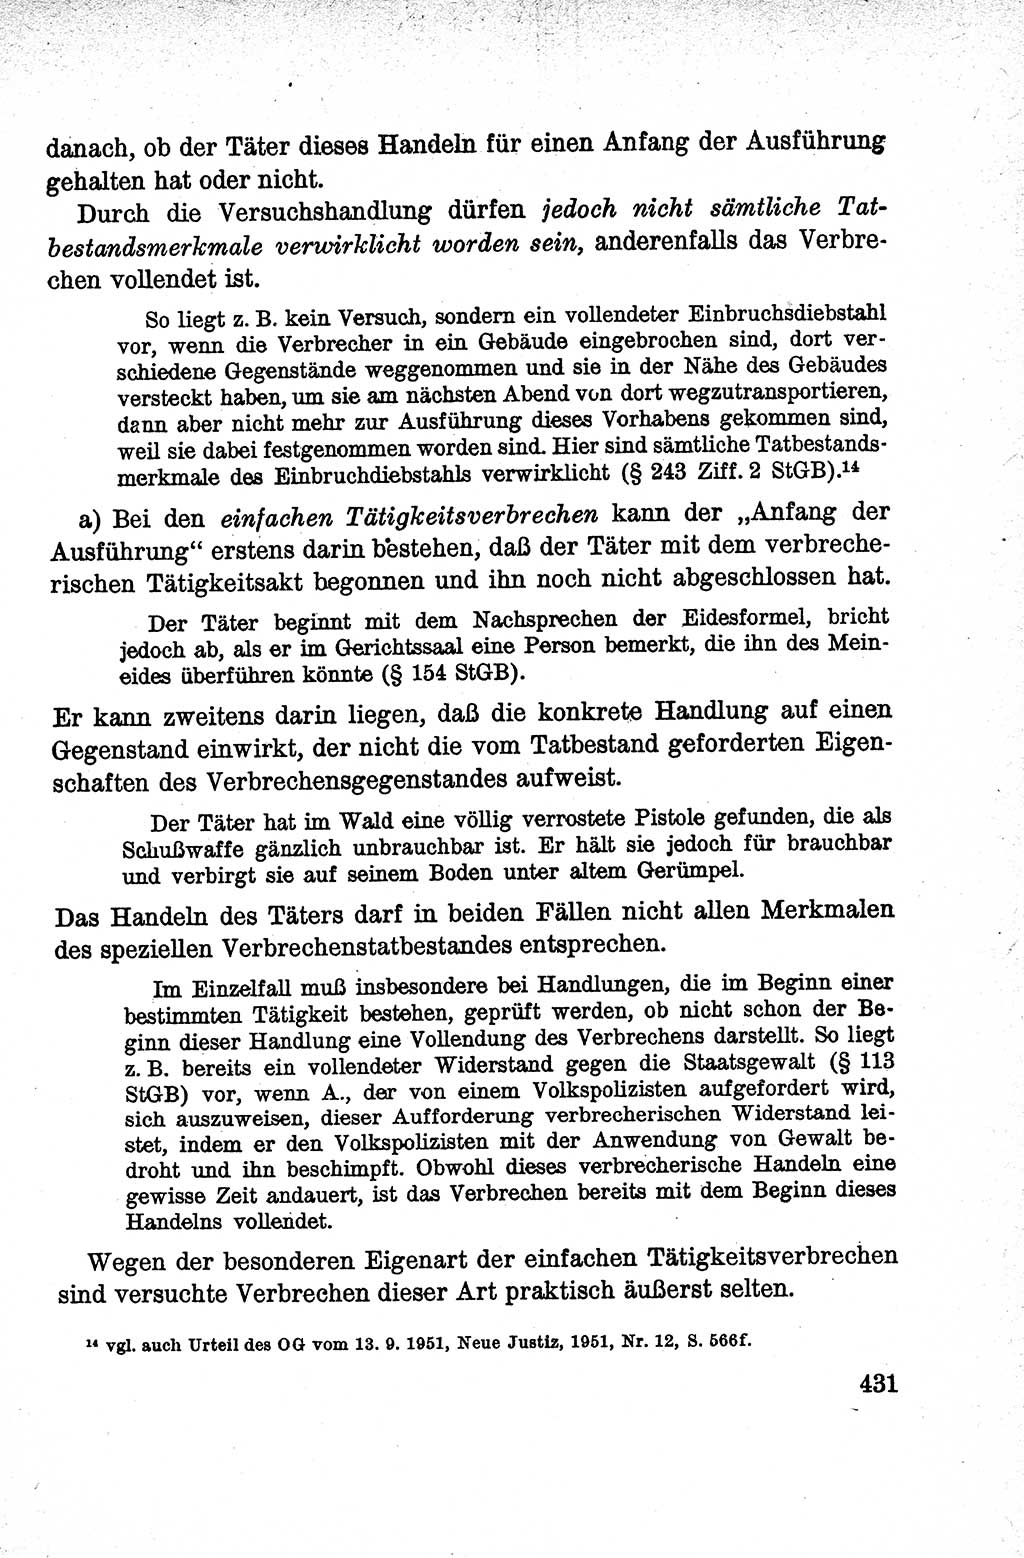 Lehrbuch des Strafrechts der Deutschen Demokratischen Republik (DDR), Allgemeiner Teil 1959, Seite 431 (Lb. Strafr. DDR AT 1959, S. 431)